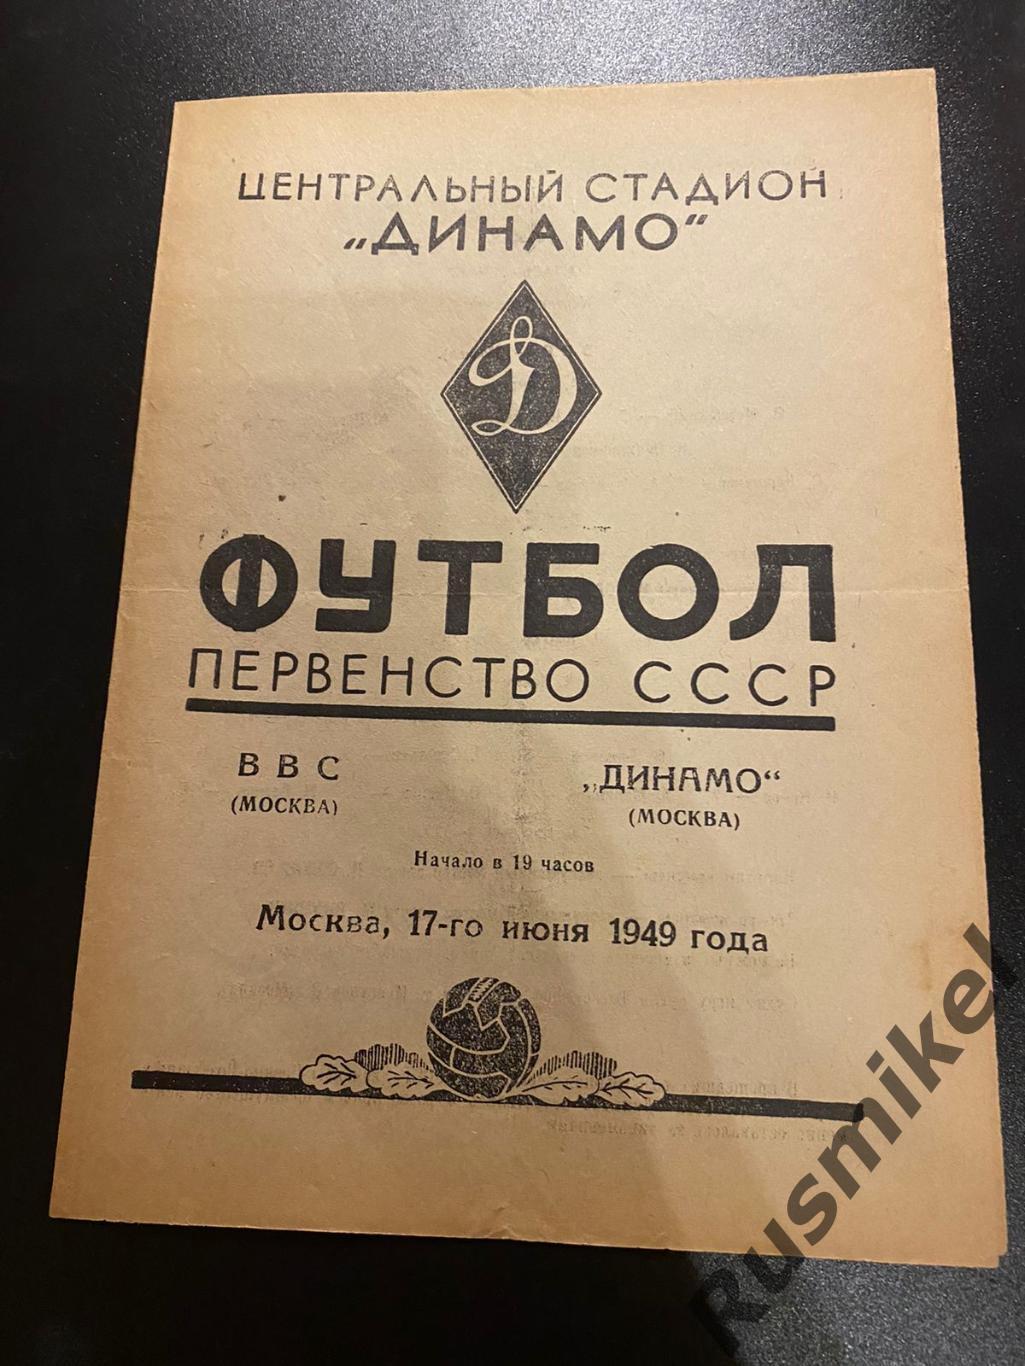 ВВС(Москва)-ДИНАМО (Москва)-17.06.1949